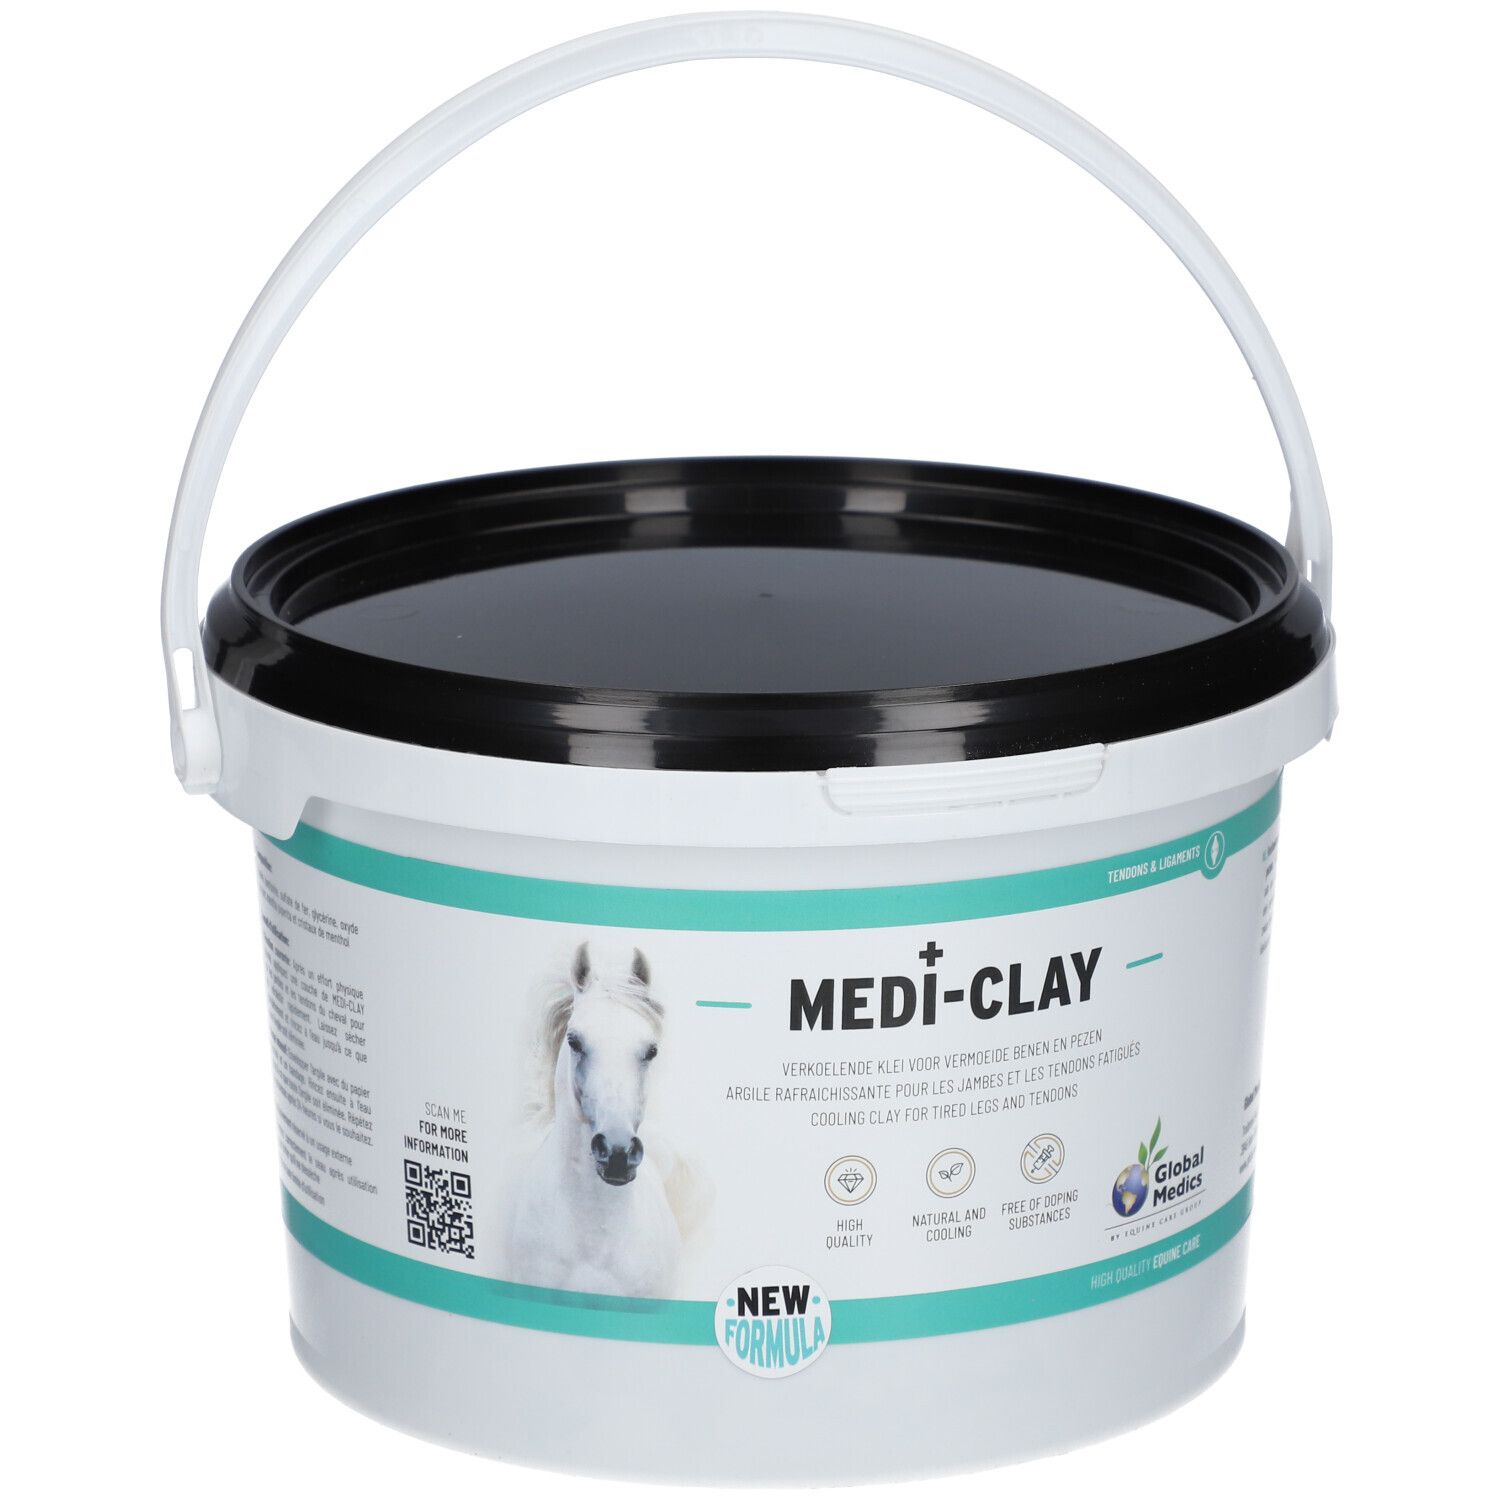 Global Medics Medi Clay 3 kg